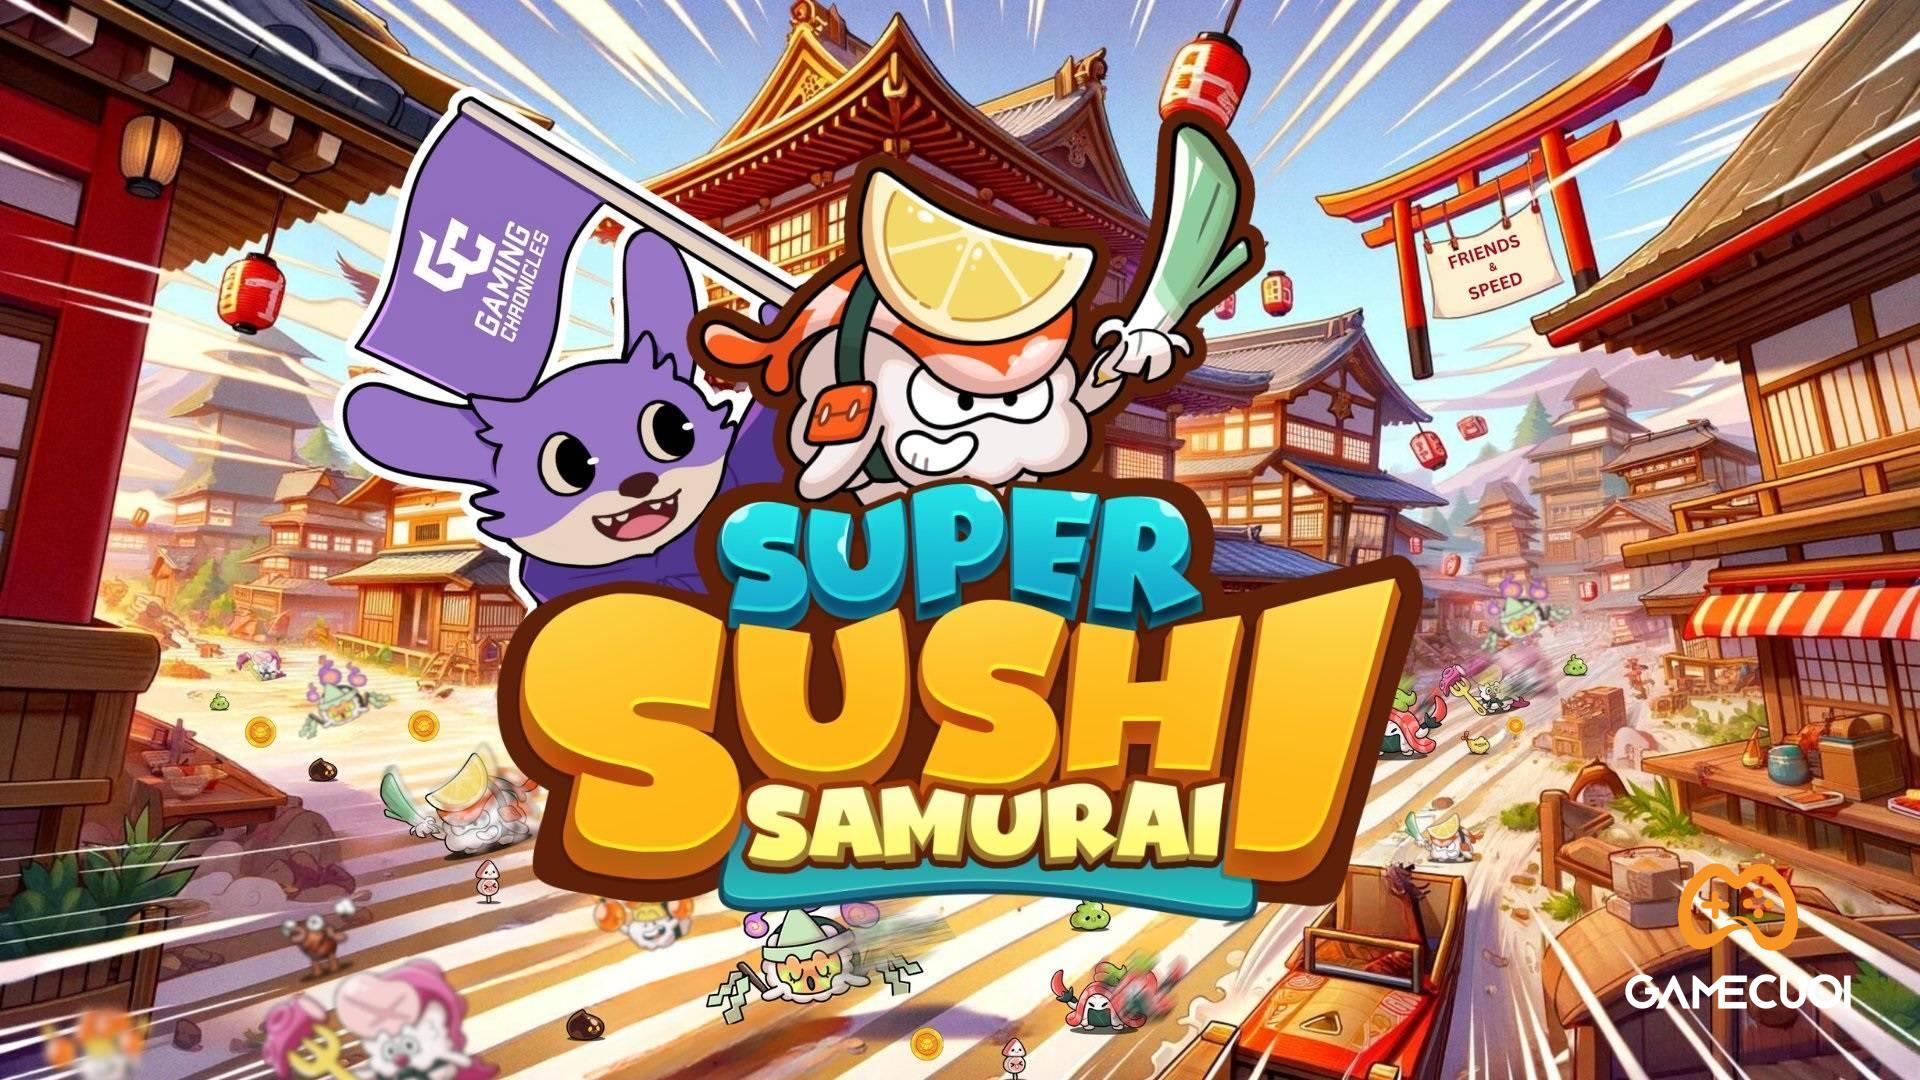 Super Sushi Samurai – Gamefi trên Telegram bất ngờ bị hack – Giá token rơi không phanh